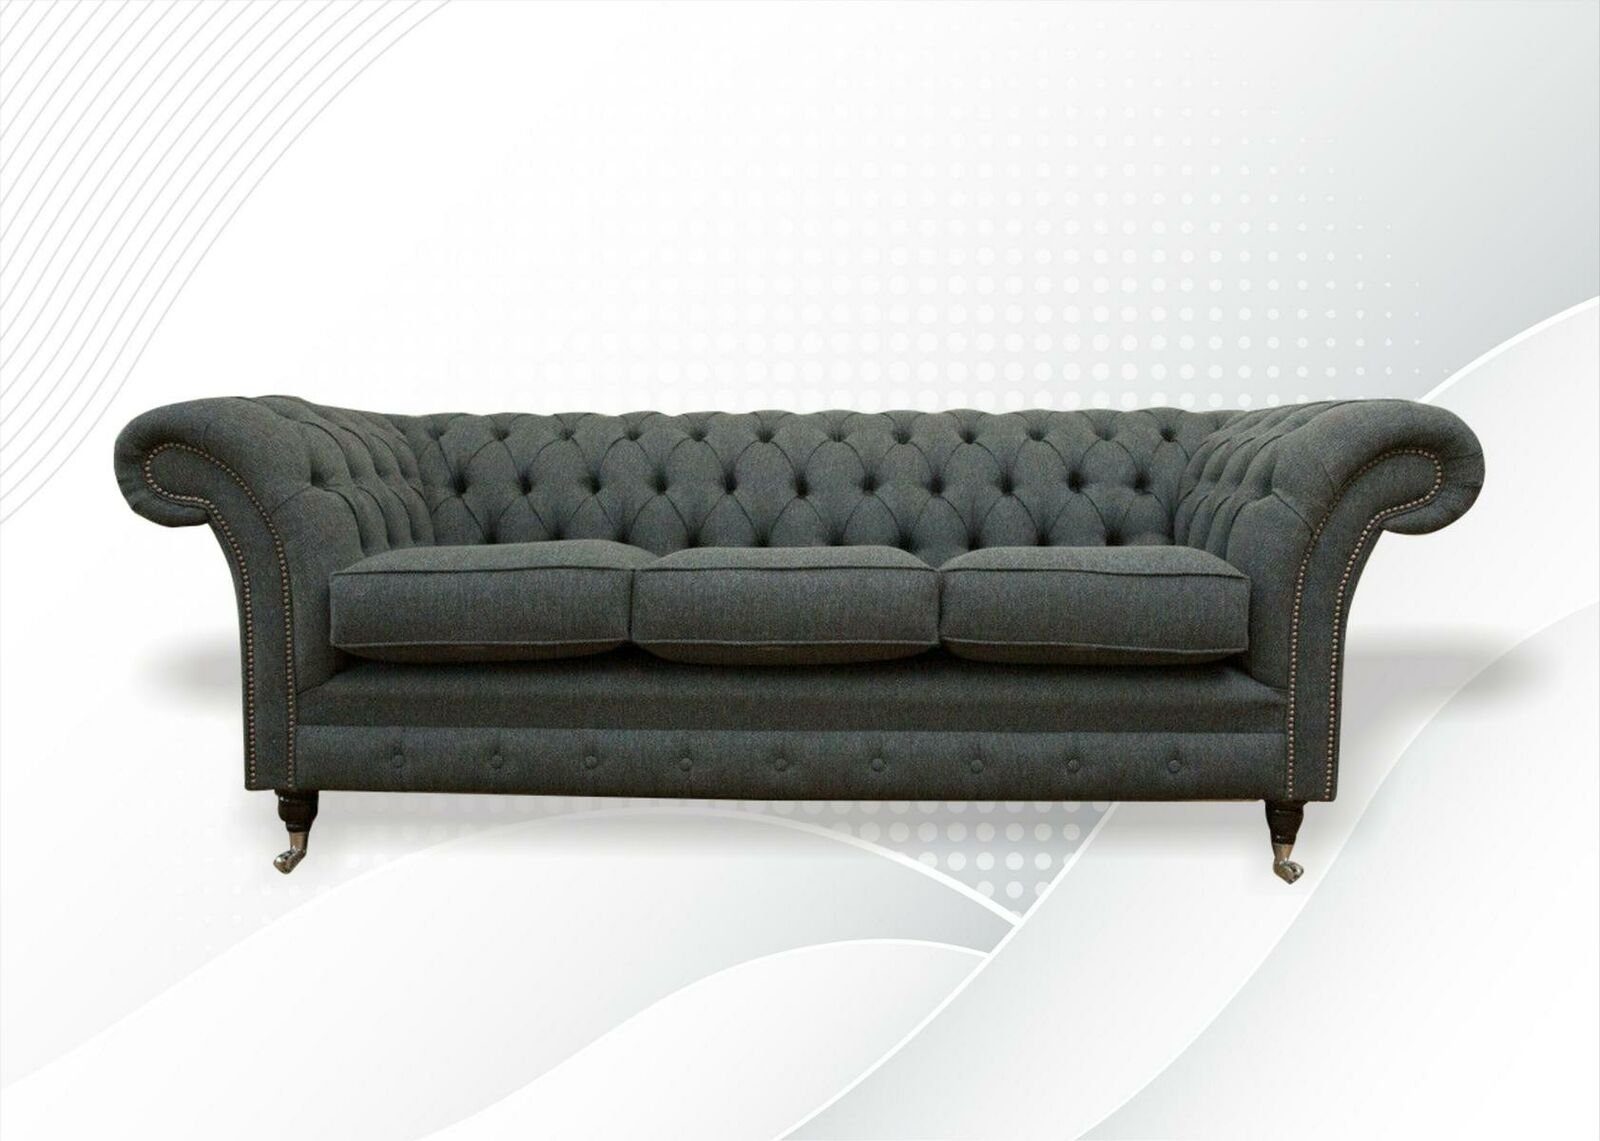 JVmoebel Chesterfield-Sofa Luxus Grauer Chesterfield Dreisitzer 3-er Couch Polstermöbel Neu, Made in Europe